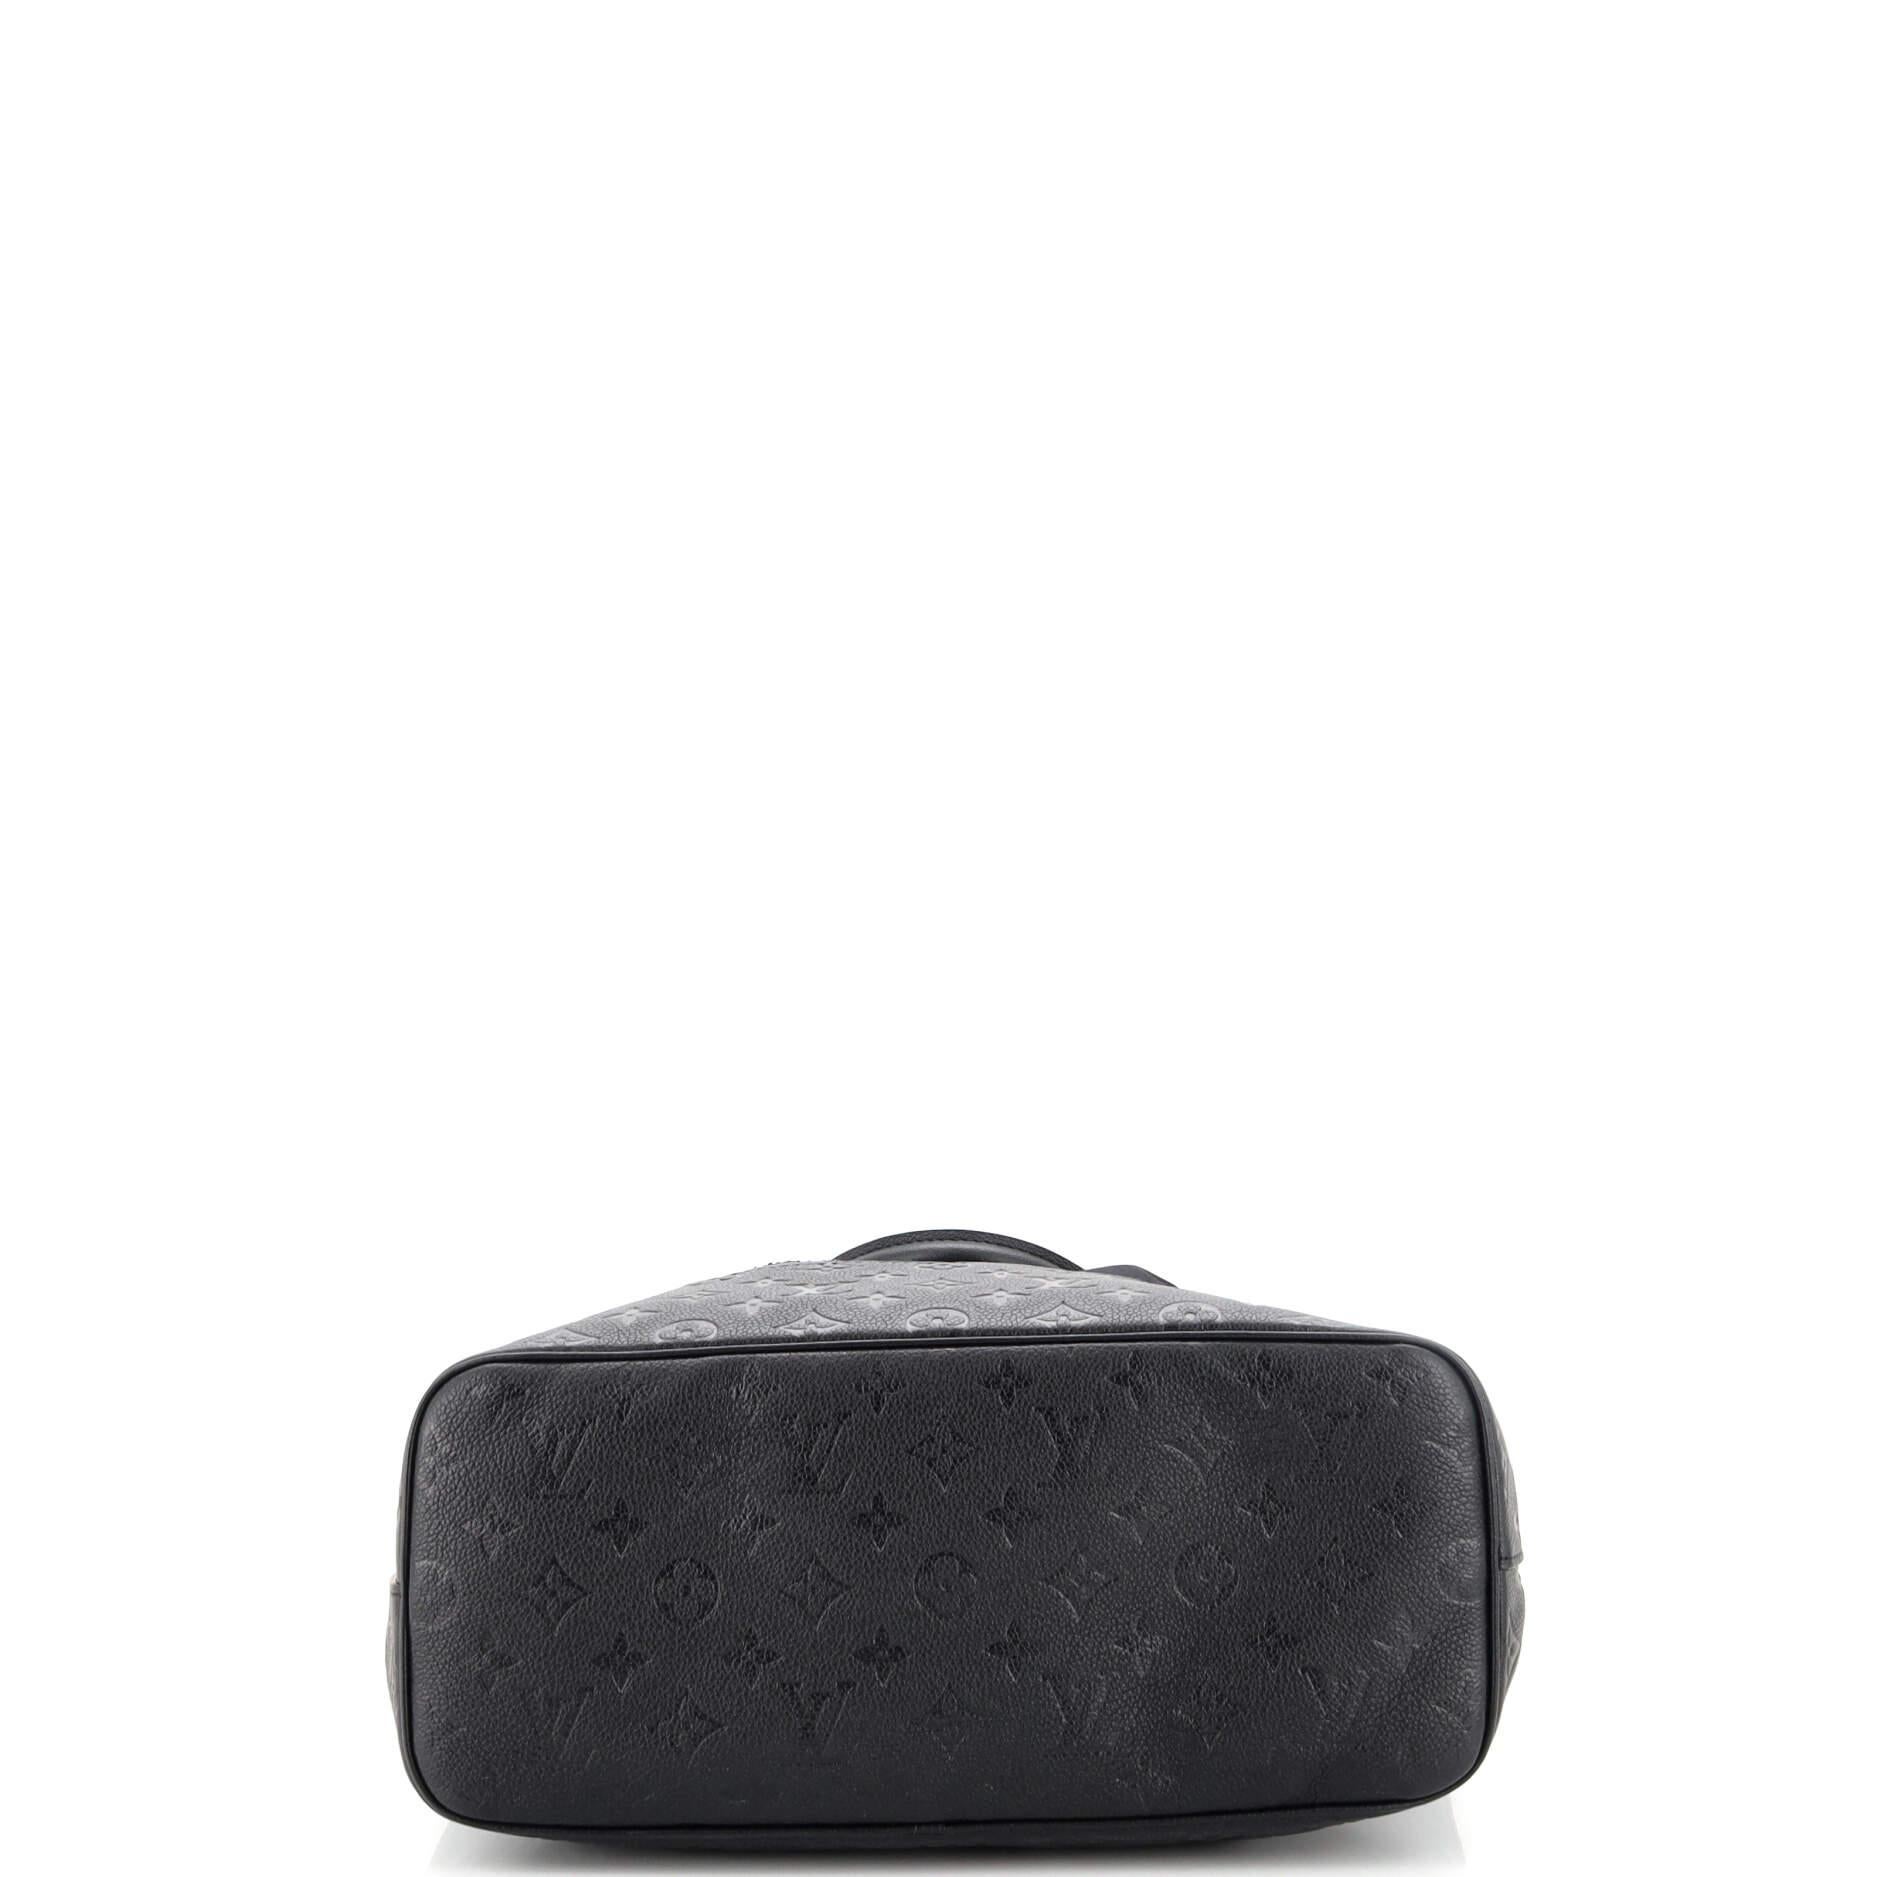 Women's or Men's Louis Vuitton Rei Kawakubo Bag with Holes Monogram Empreinte Leather MM